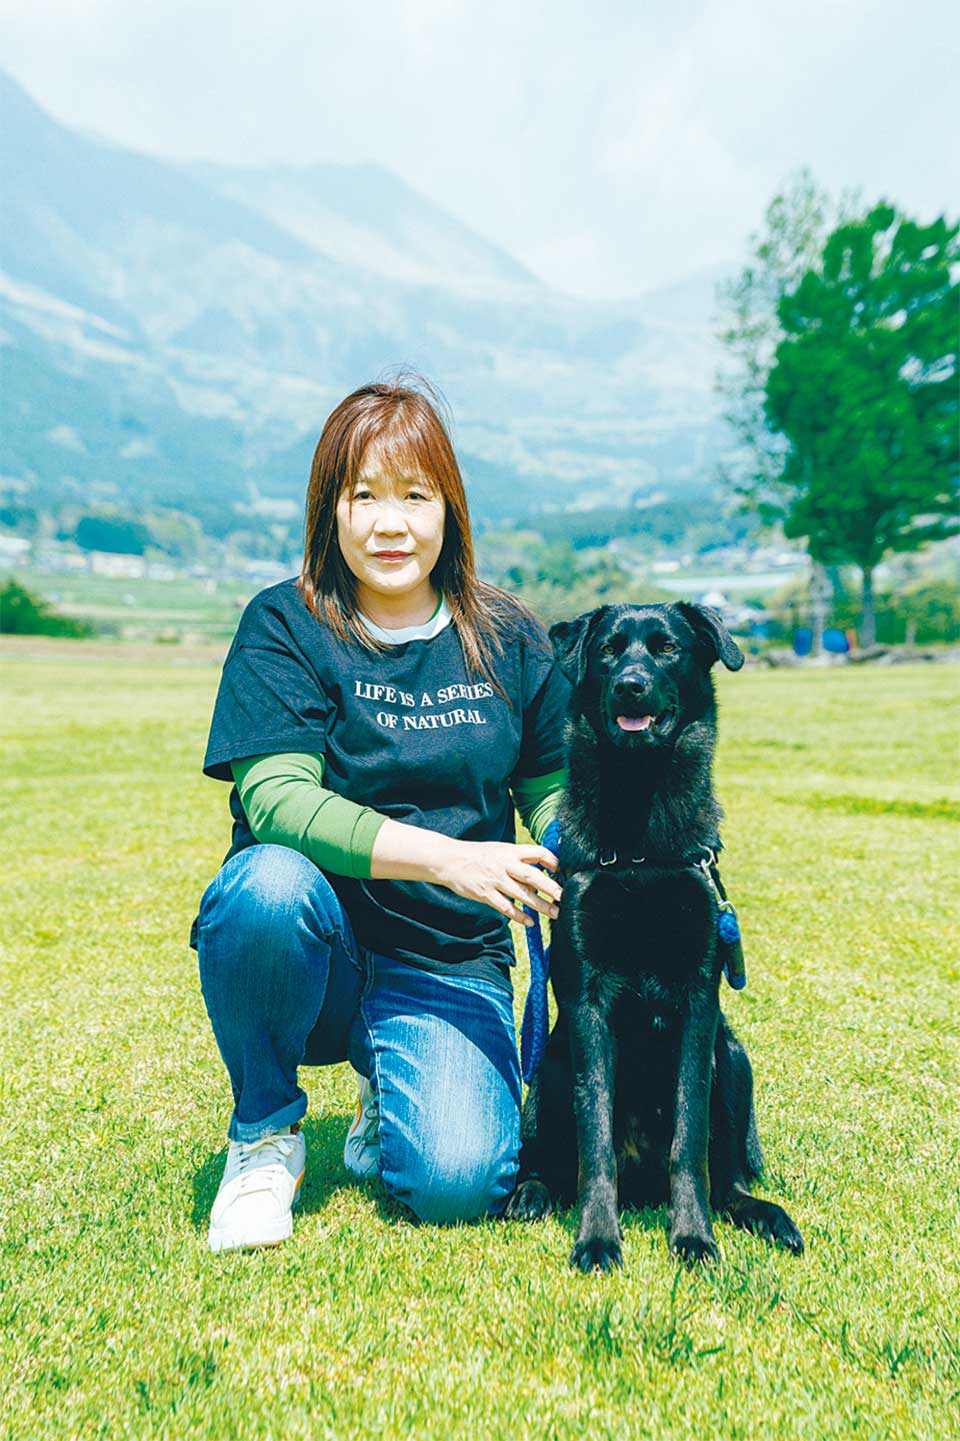 緒方 さよりさん 1969年、阿蘇市生まれ。地元の看護専修学校を卒業後、熊本市内や阿蘇市内の病院に勤務。2021年、両親を在宅介護するため退職。23年、犬猫のフードを製造販売する「きいのONEスプーン」を長女と立ち上げる。南阿蘇村で長男と愛犬2匹と暮らす。